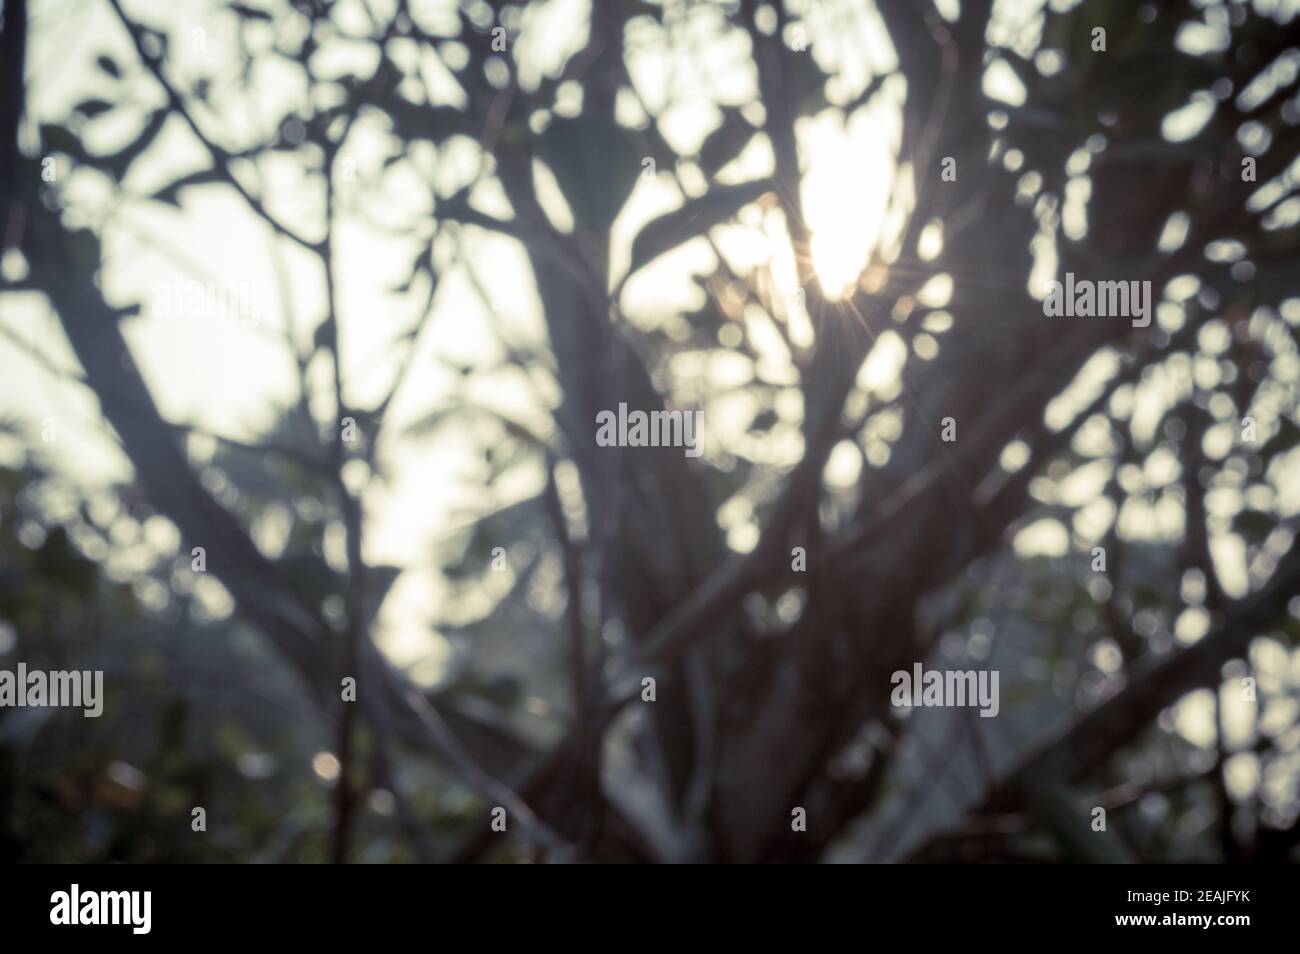 Morgensonne durch Baumblätter. Blur Forest Bush Waldlandschaft im Vordergrund Silhouette von hinten beleuchtet hellen Sonnenstrahl. Schönheit in der Natur Abstraktes Thema Hintergrundbild. Speicherplatz kopieren. Stockfoto